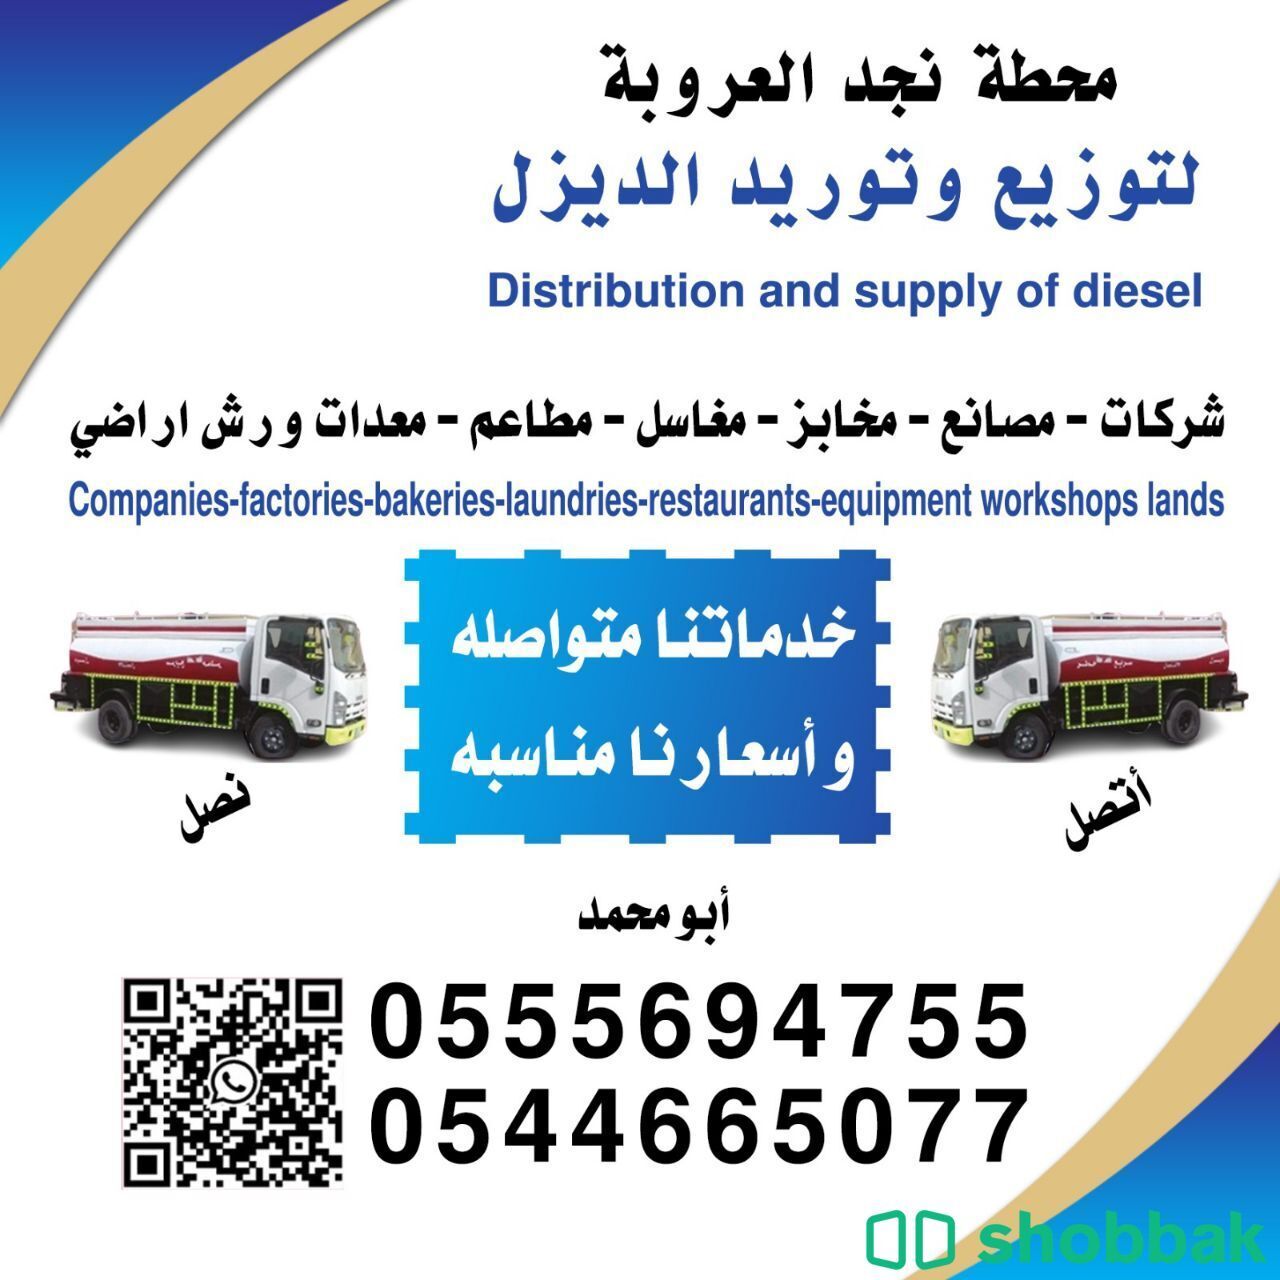 توصيل الديزل في  الرياض توصيل ديزل
خدماتنا
توصيل الديزل للمشاريع والمصانع Shobbak Saudi Arabia